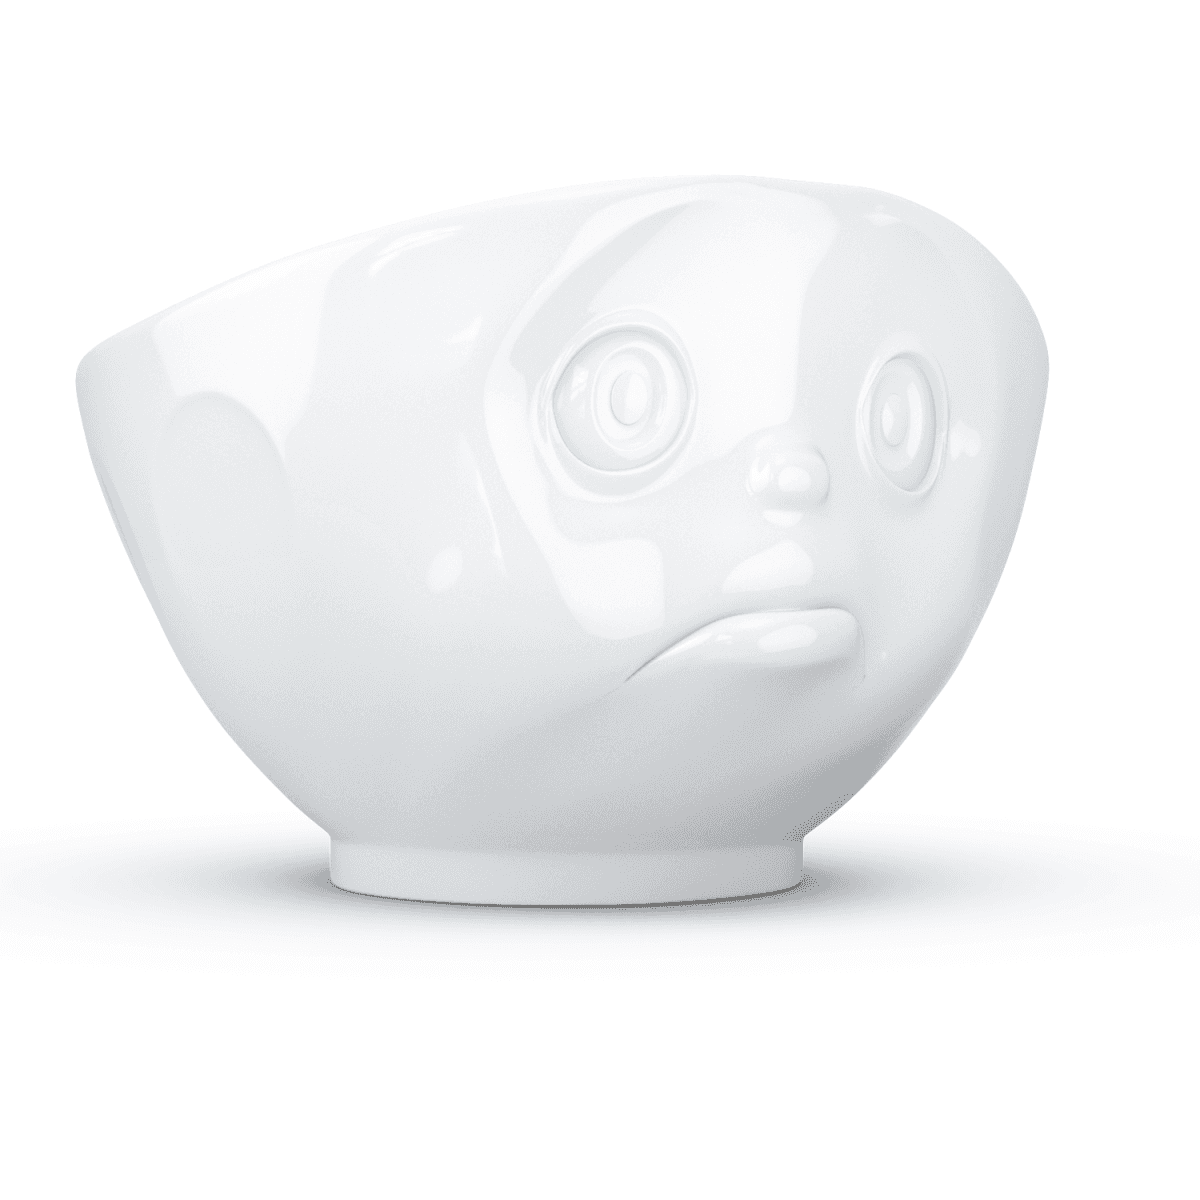 Immagine del prodotto Ciotola Broncio 3D in Porcellana 500 ml | TASSEN By Fiftyeight Products